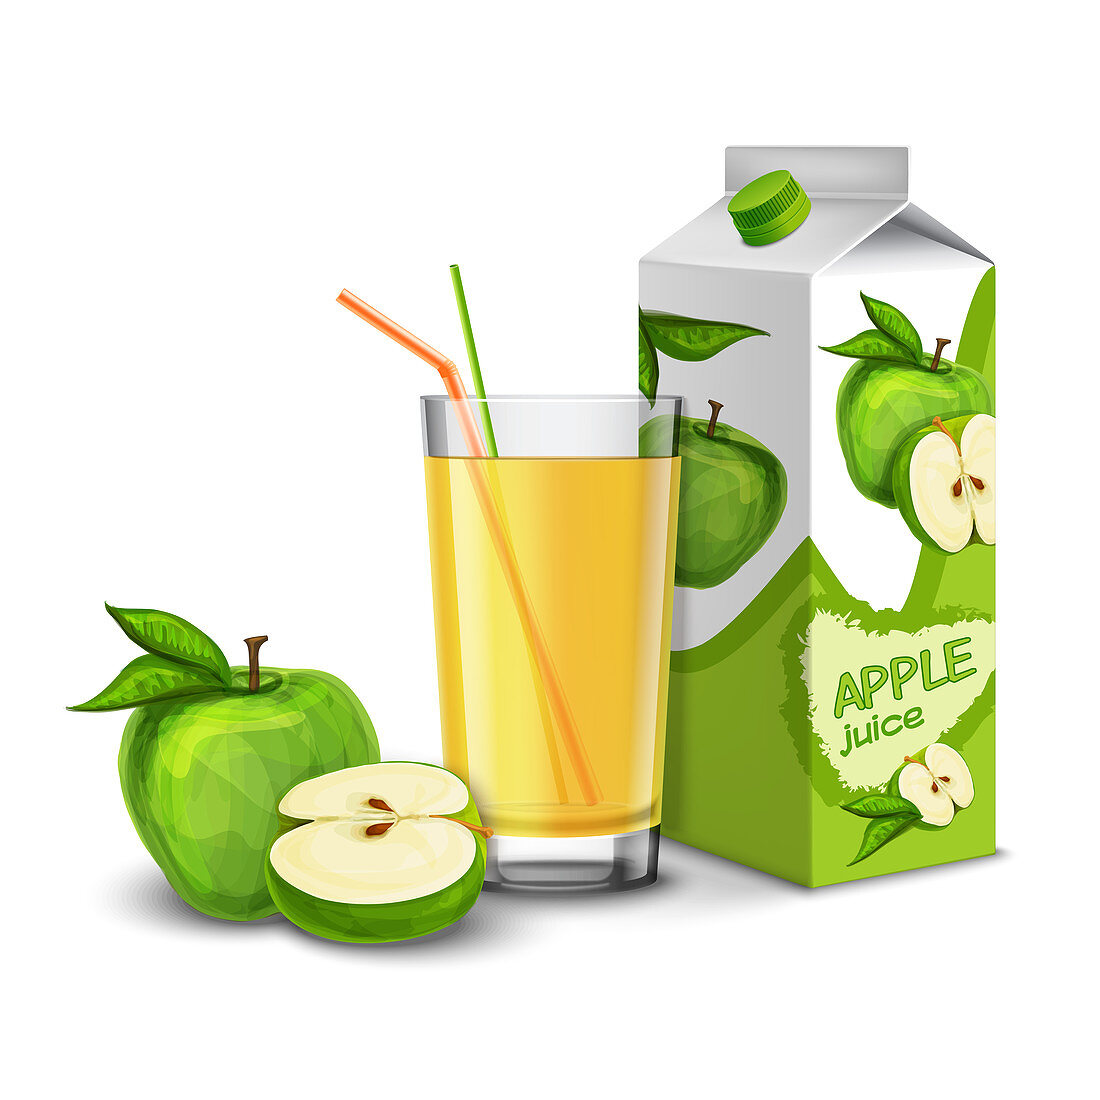 Apple juice, illustration